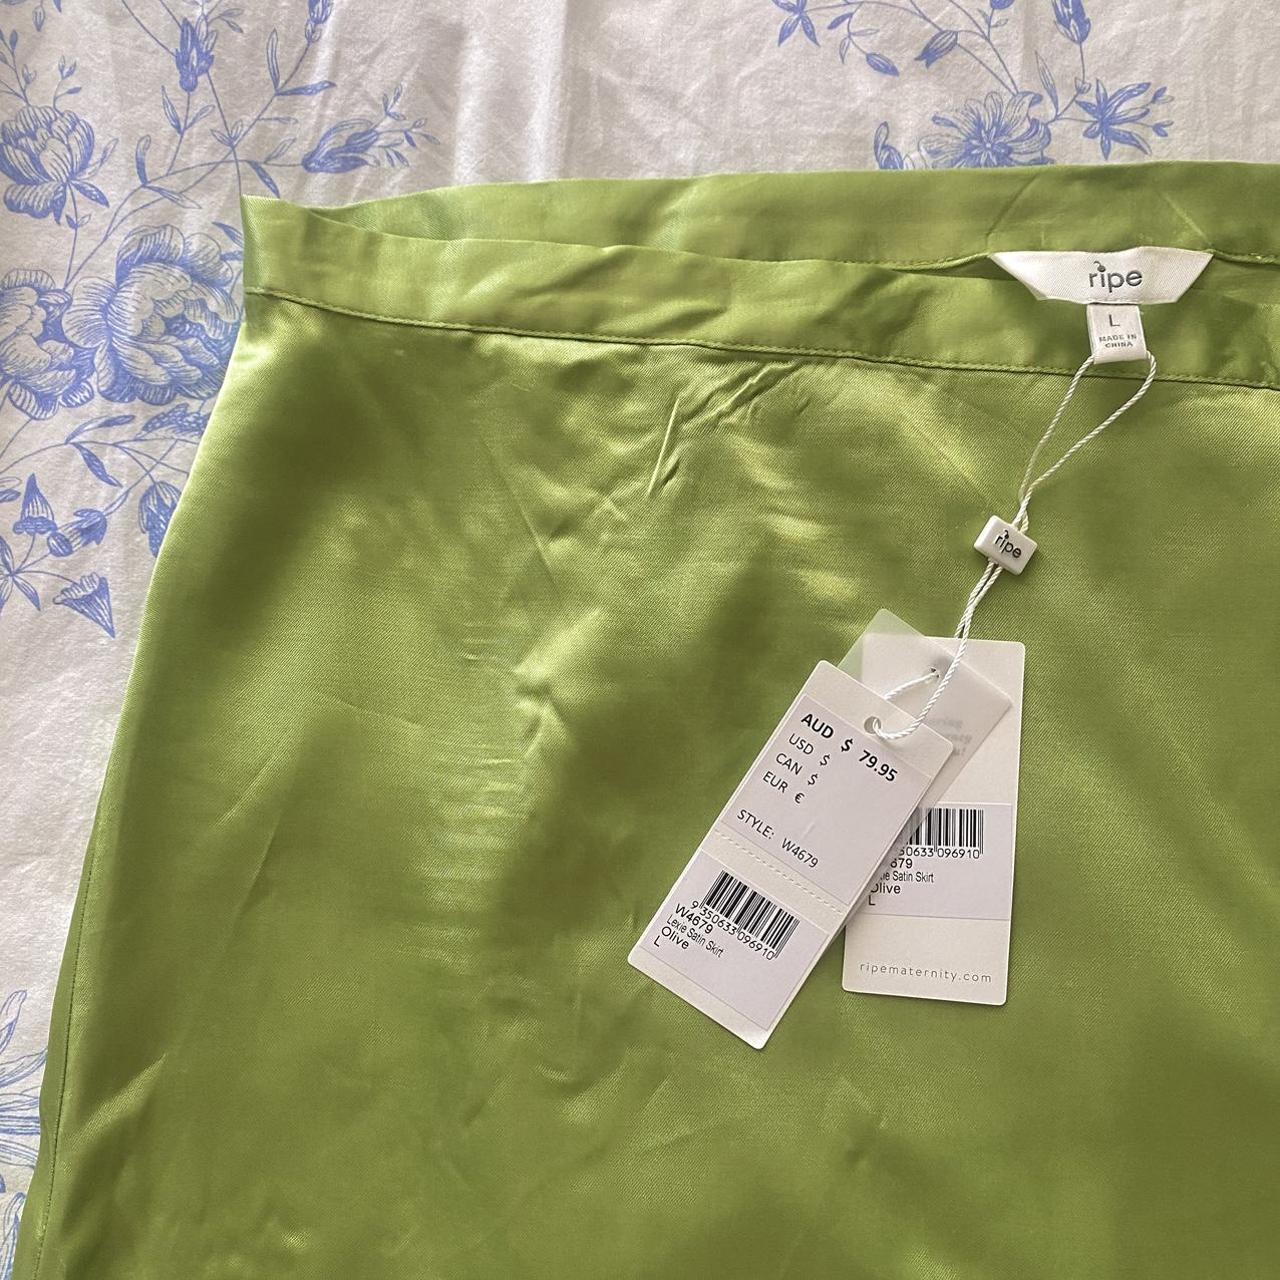 lime green satin skirt. 🌿 -brand: Ripe maternity... - Depop